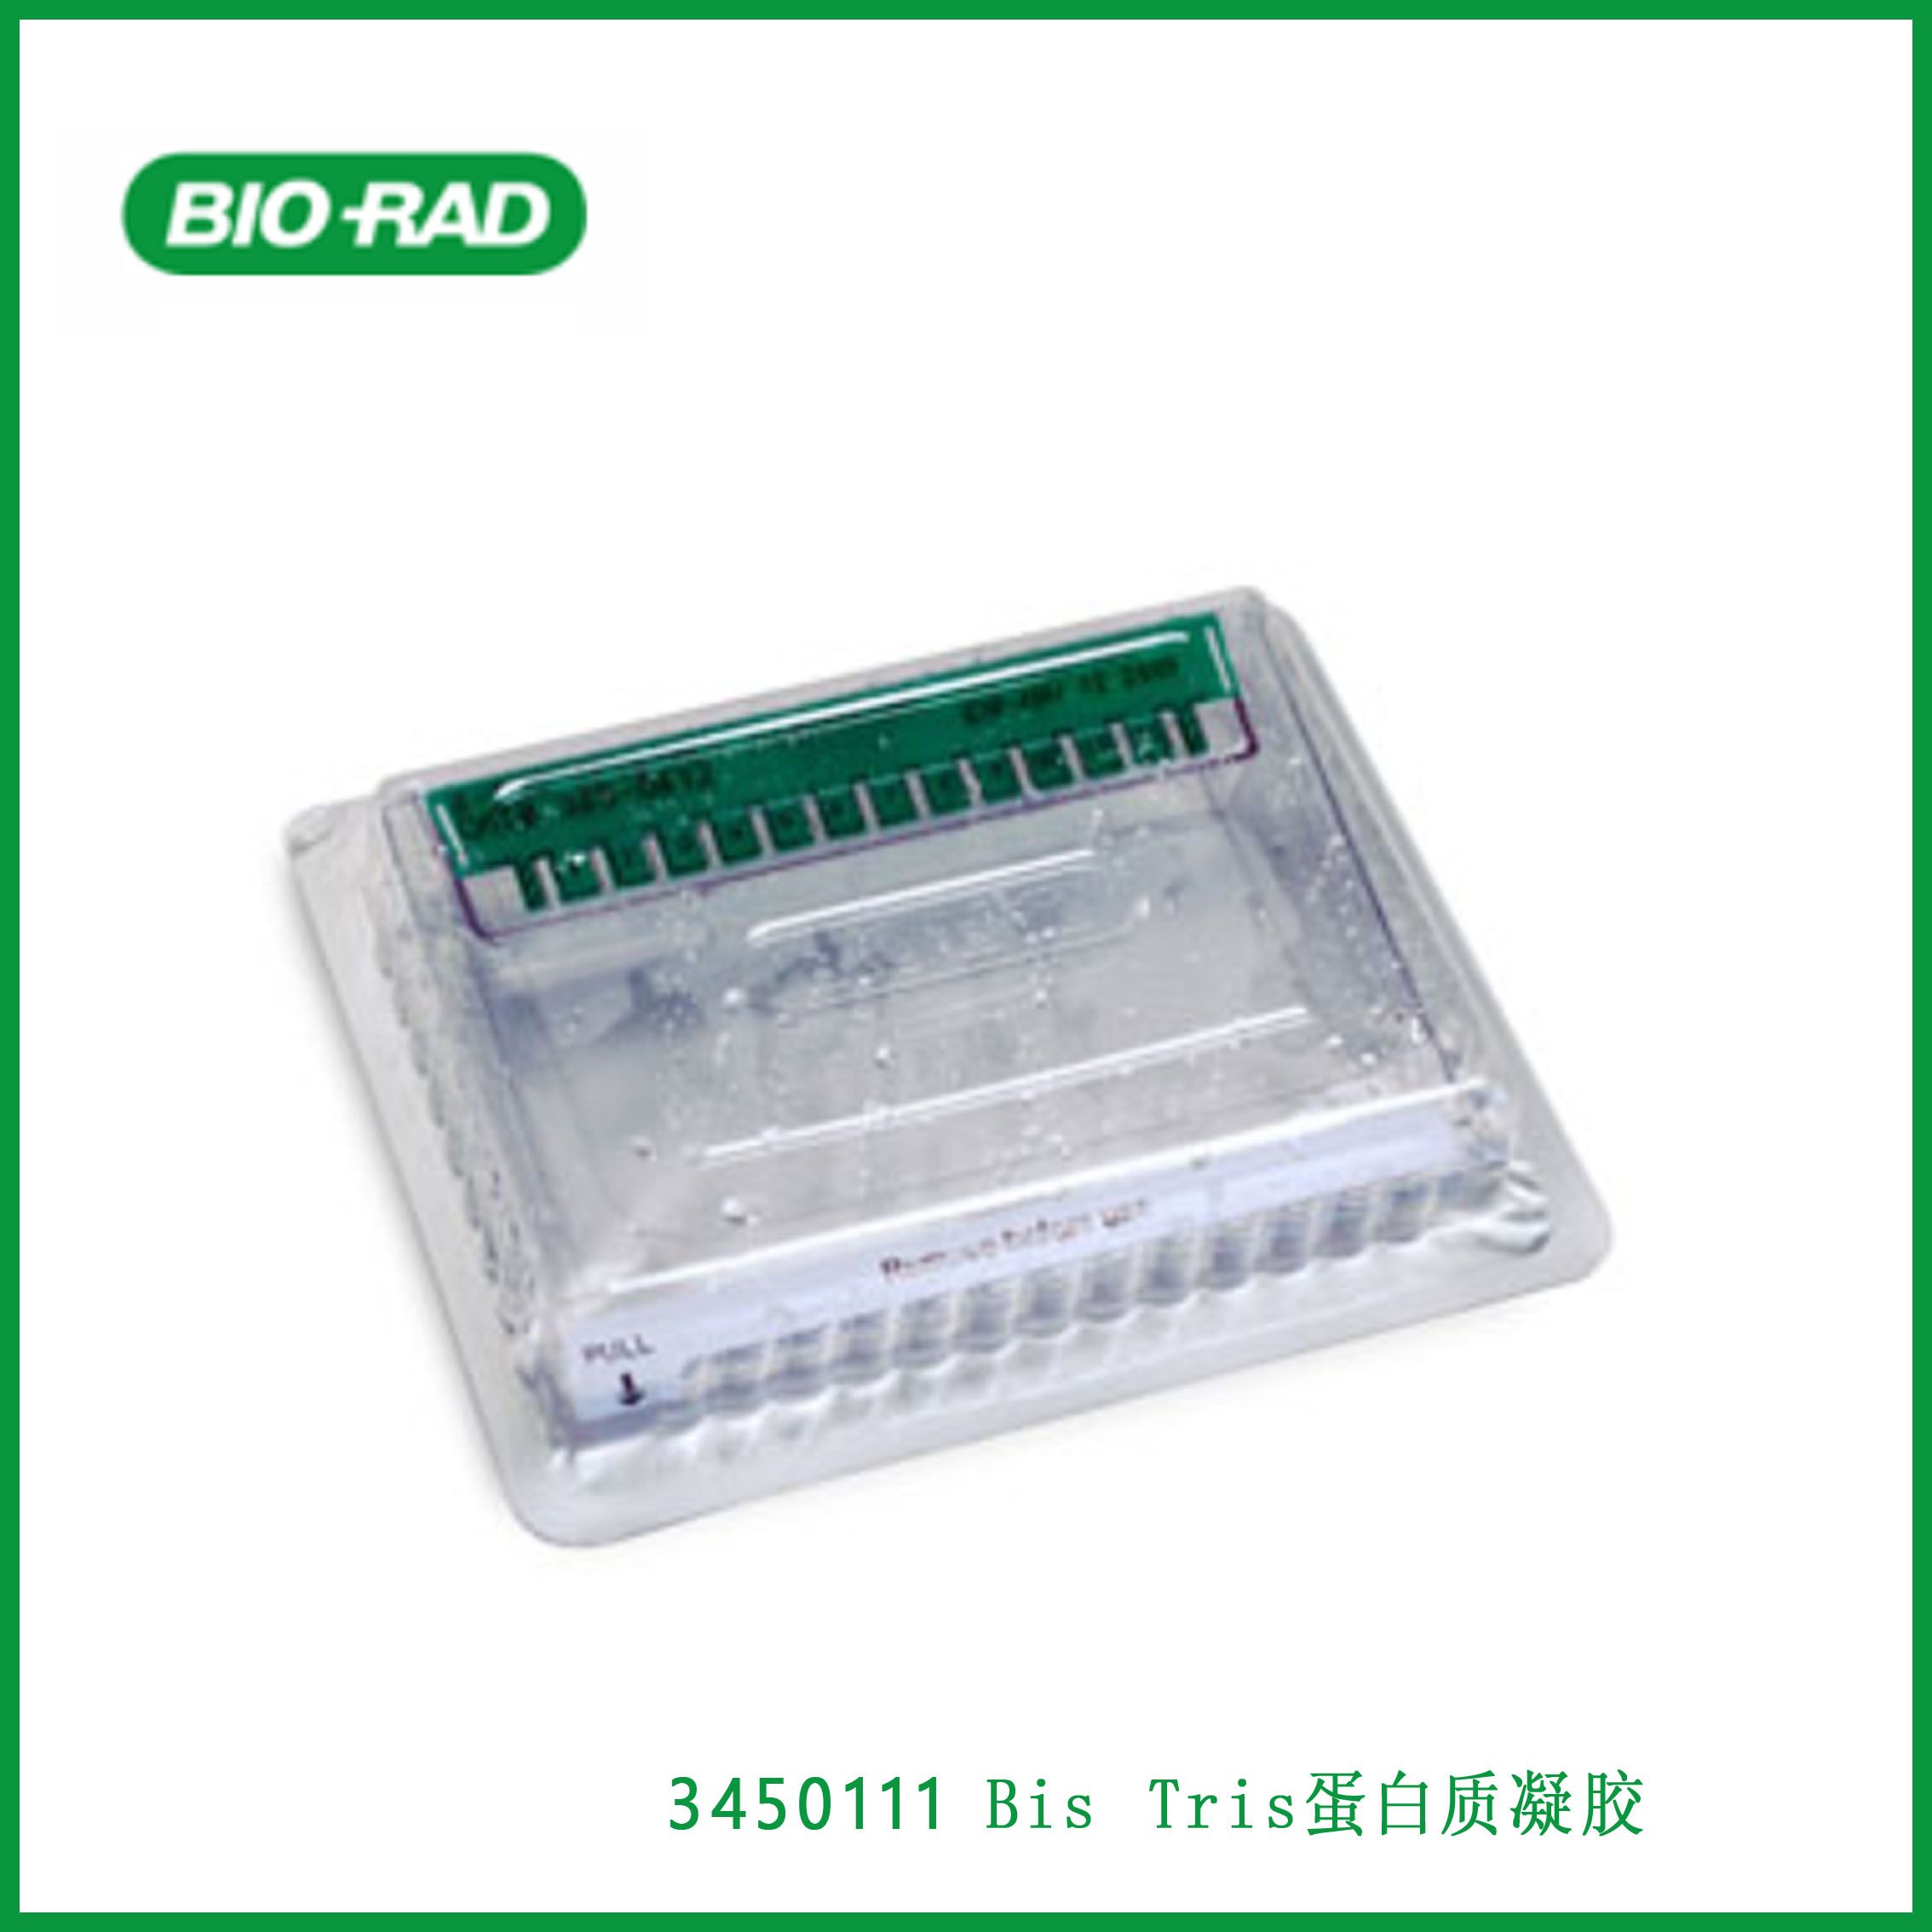 伯乐Bio-Rad3450111 10% Criterion™ XT Bis-Tris Protein Gel, 12+2 well, 45 µl，10%标准™ XT Bis Tris蛋白质凝胶，12+2孔，45µl，现货